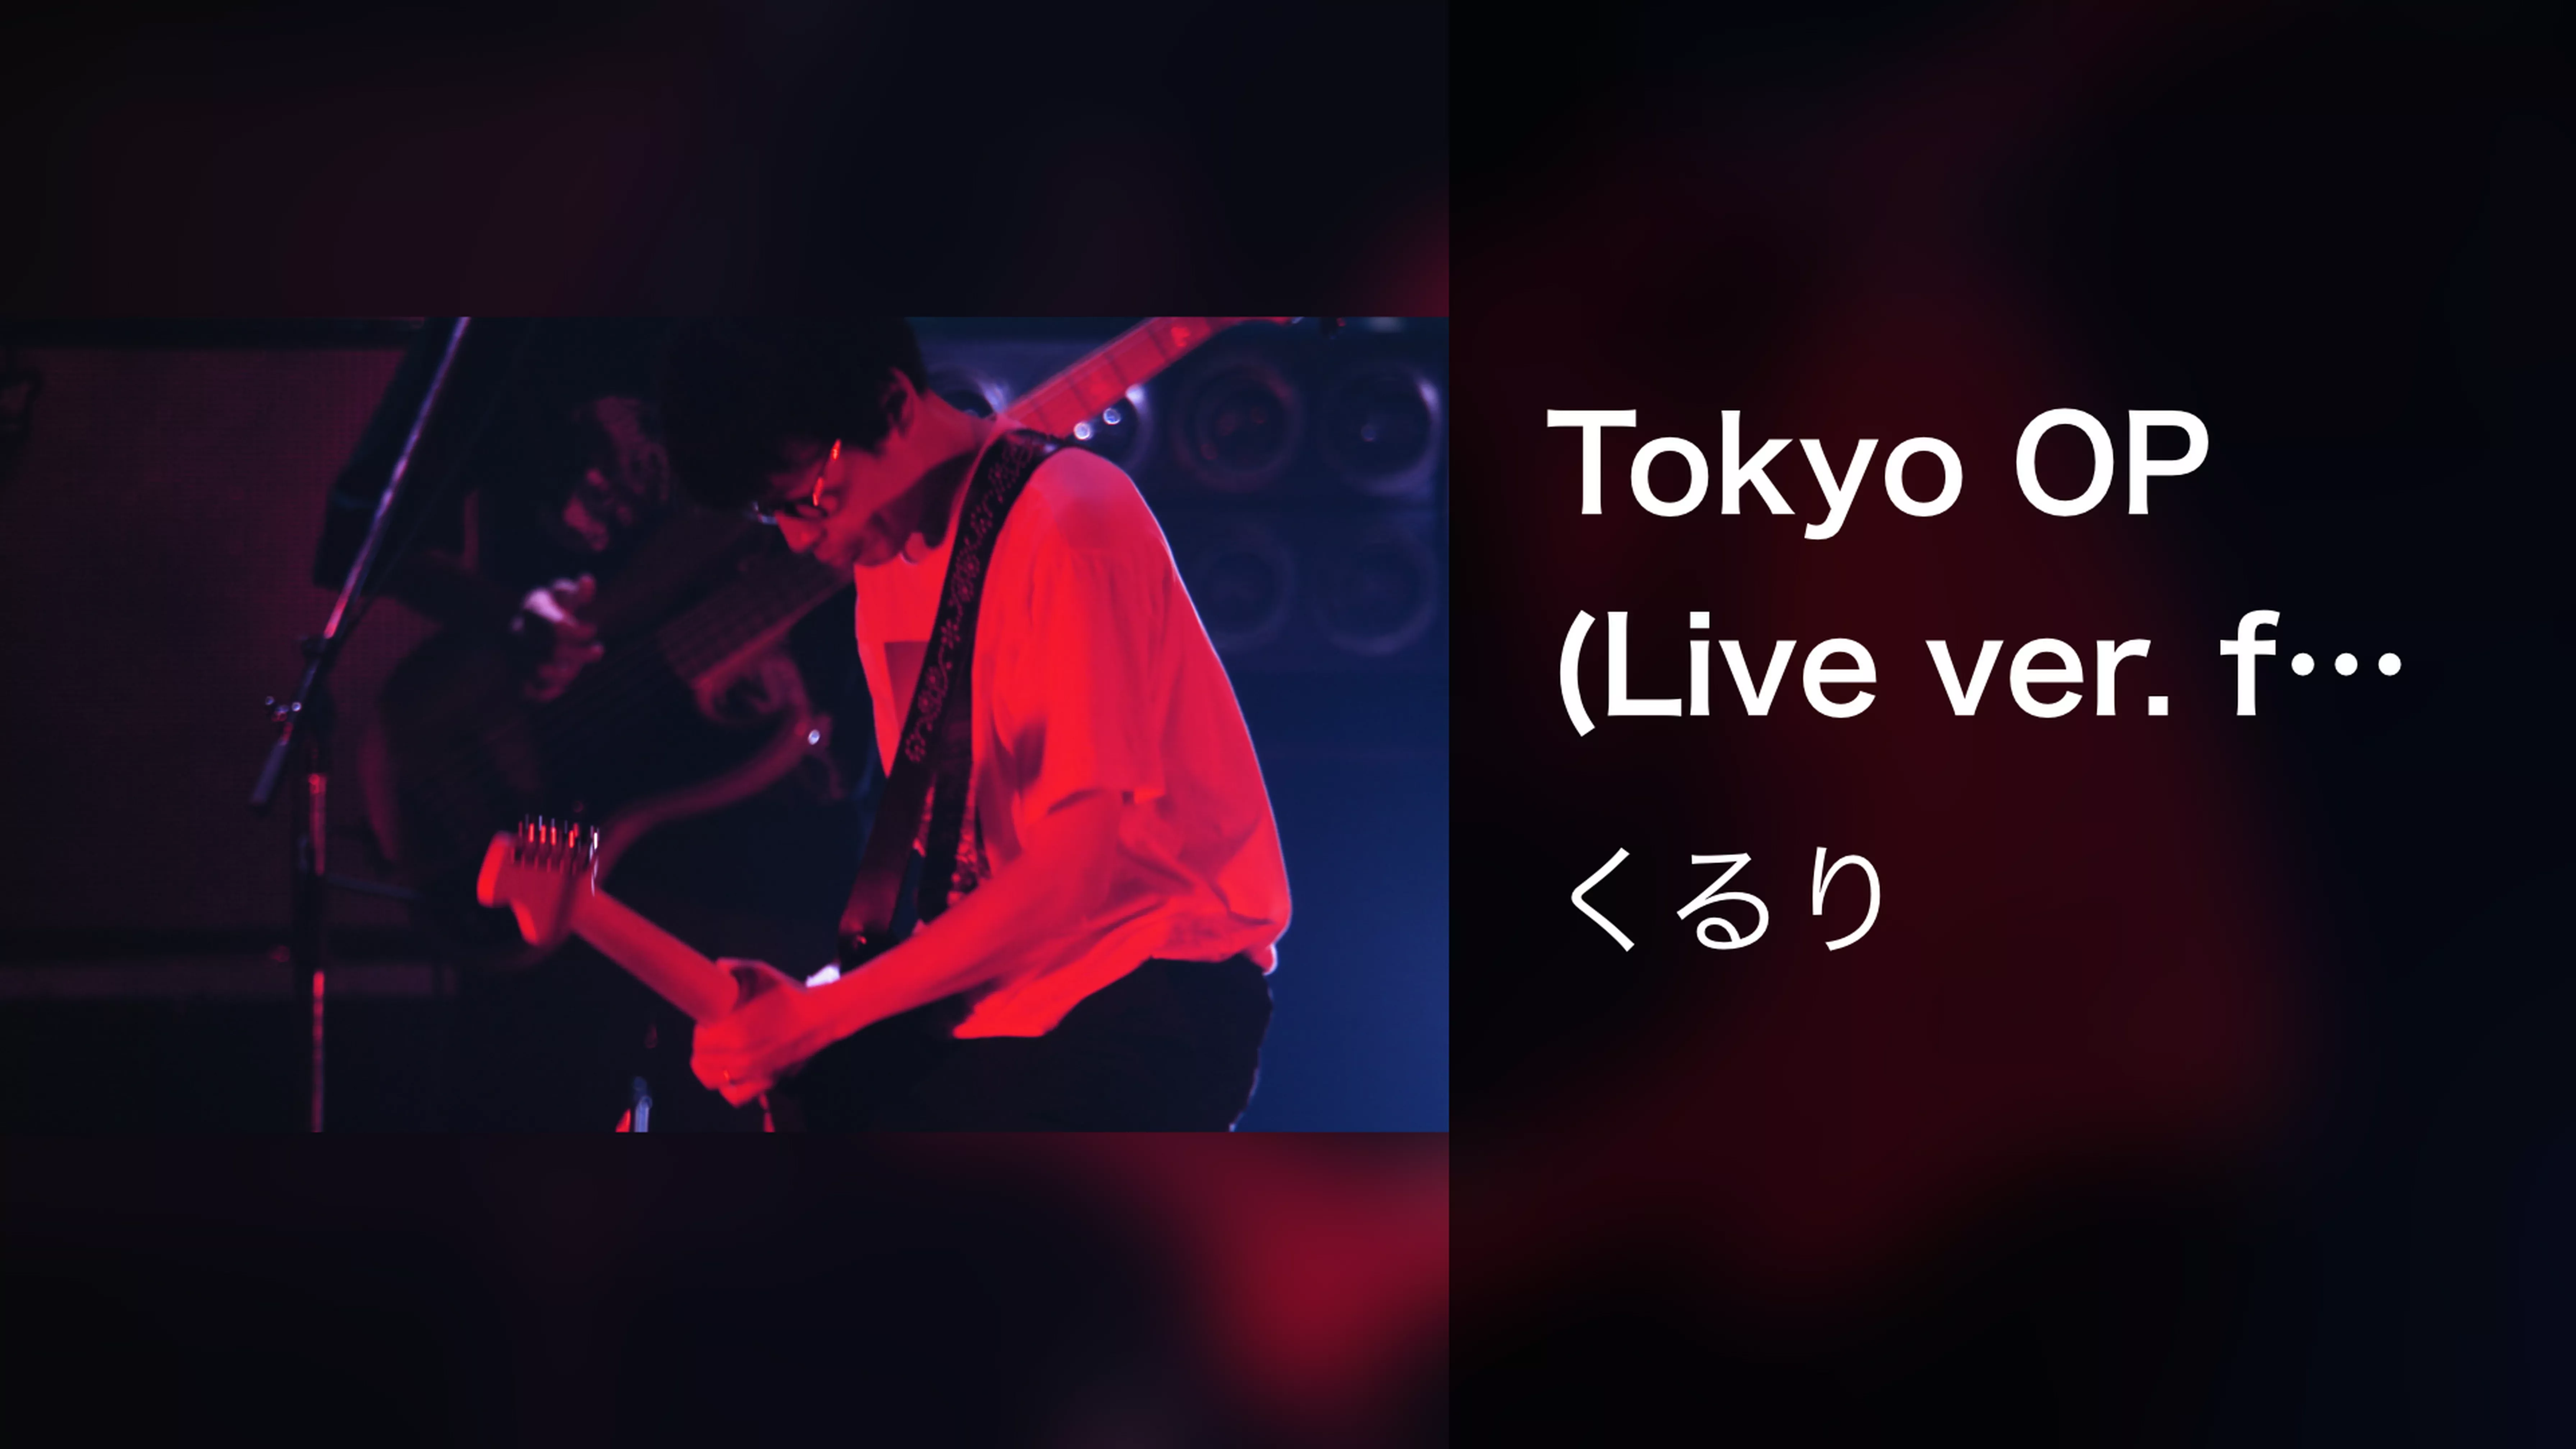 Tokyo OP (Live ver. from 「線」)